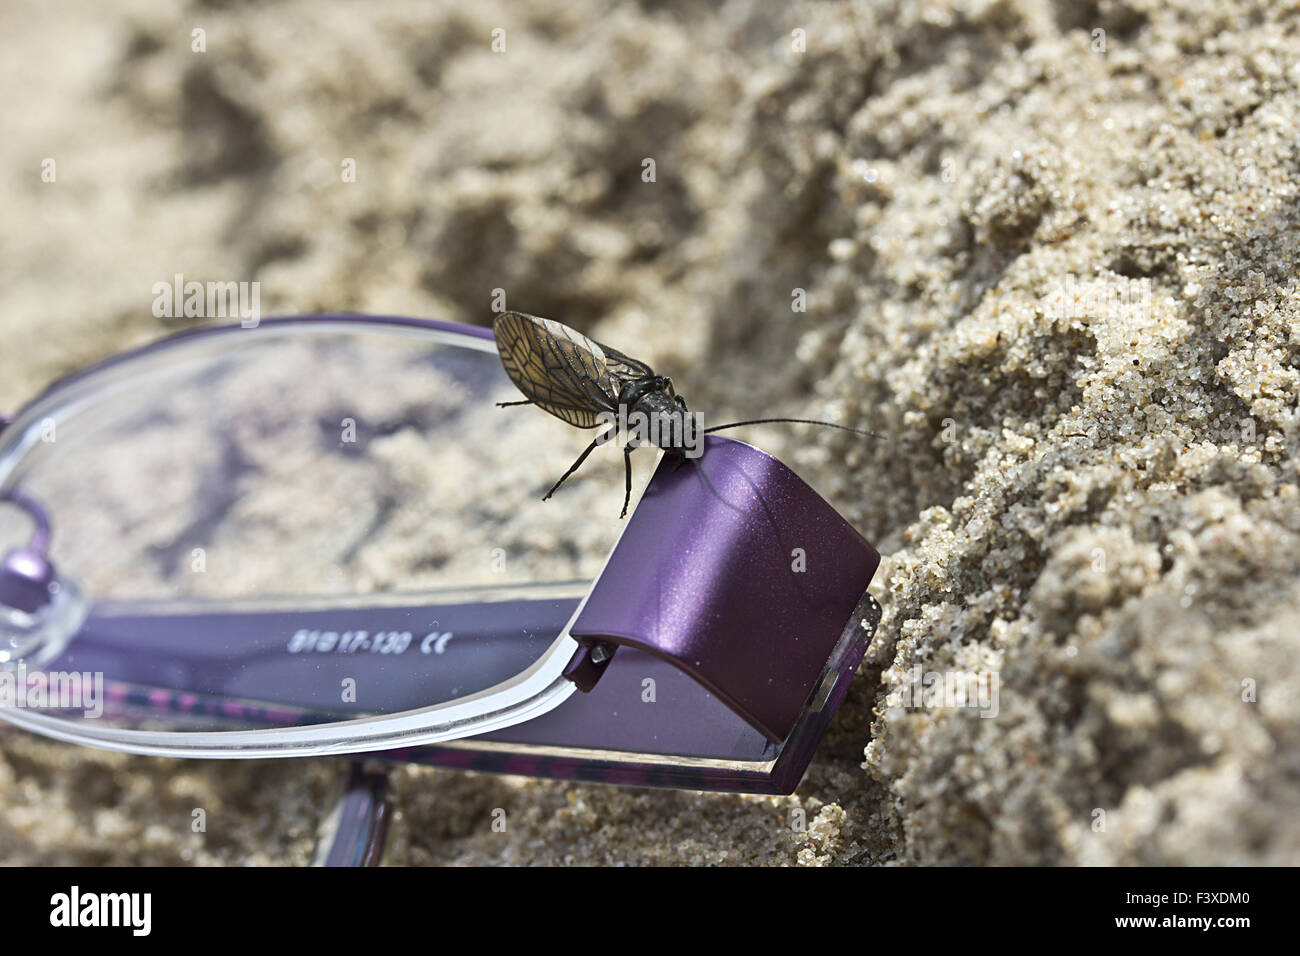 Les lunettes et les insectes Banque D'Images